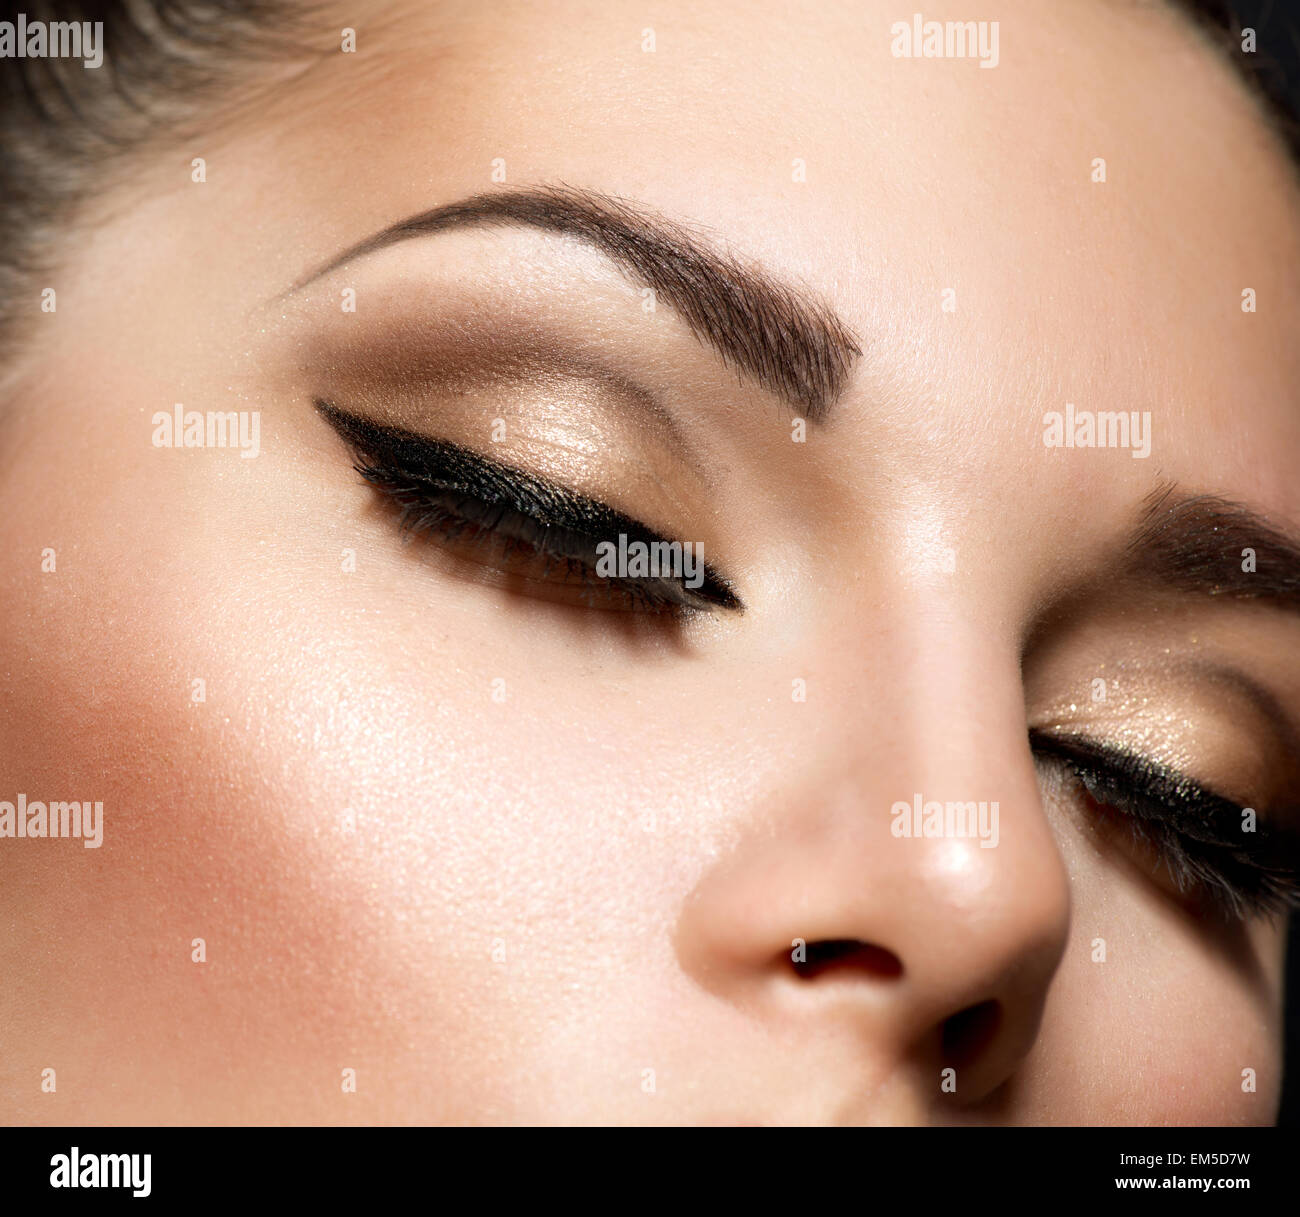 Le maquillage des yeux. De beaux yeux style rétro Make-up Photo Stock -  Alamy